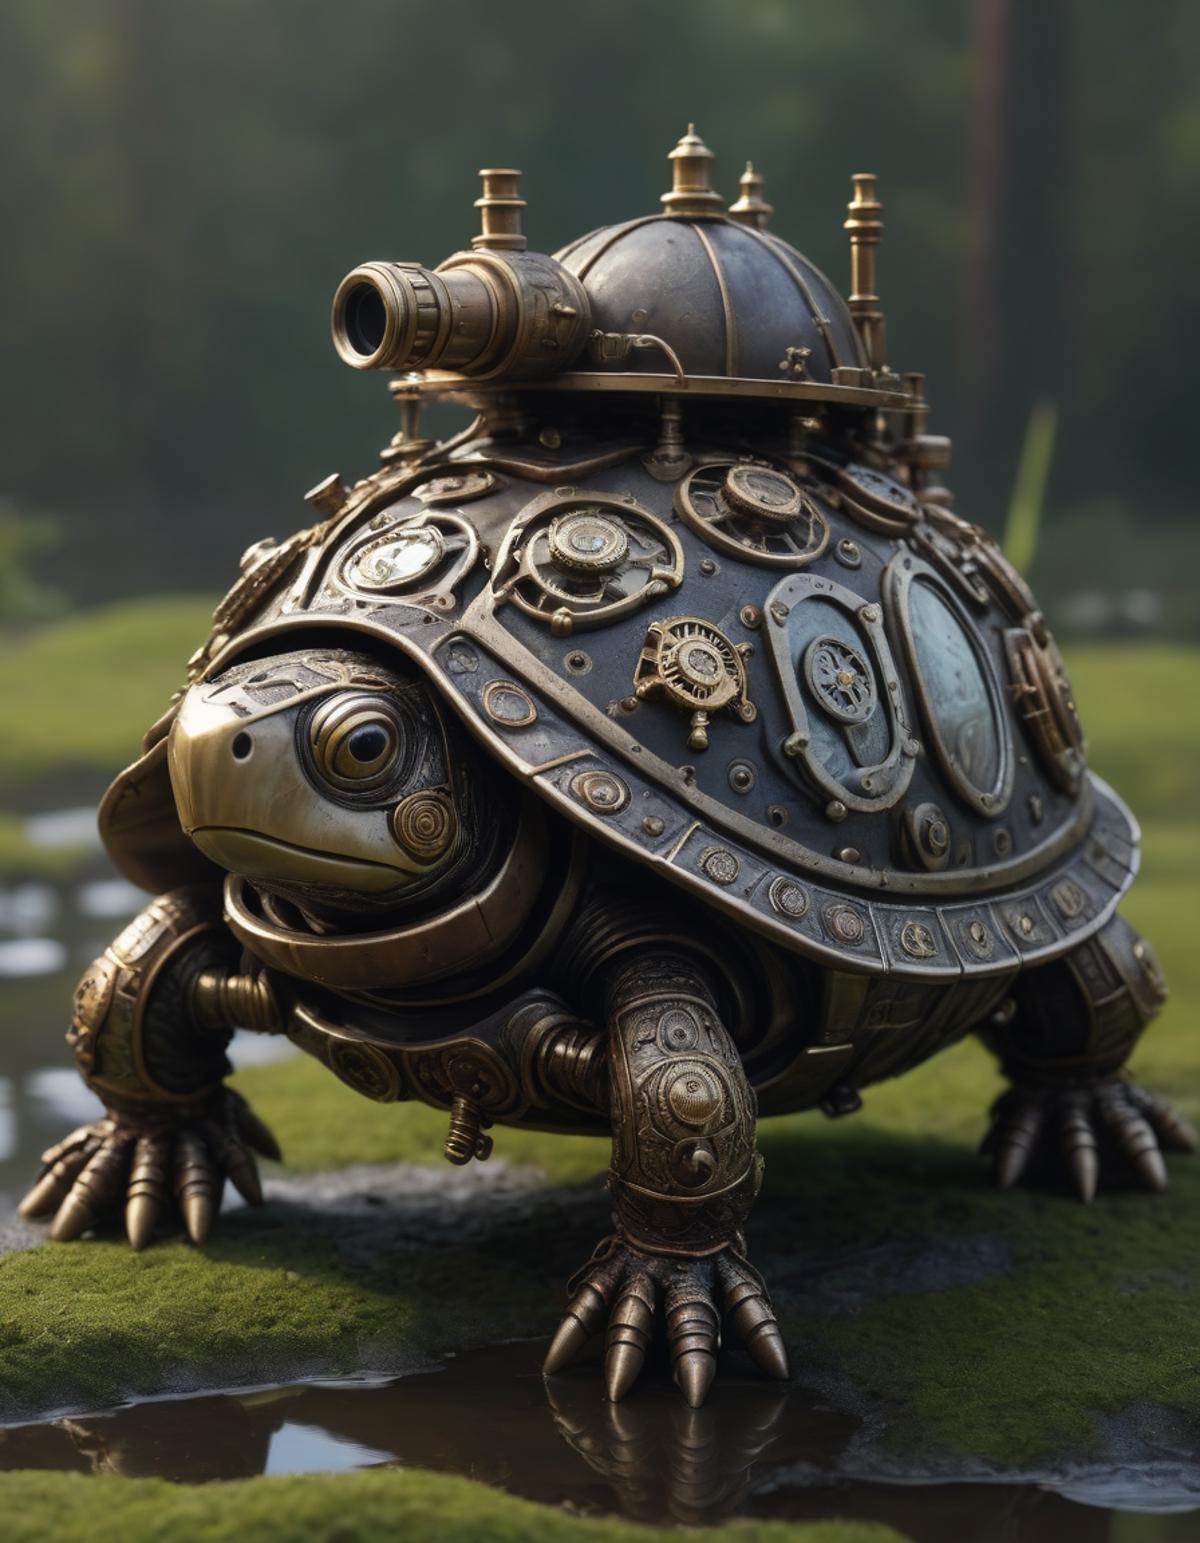 A golden robotic turtle with a unique design.